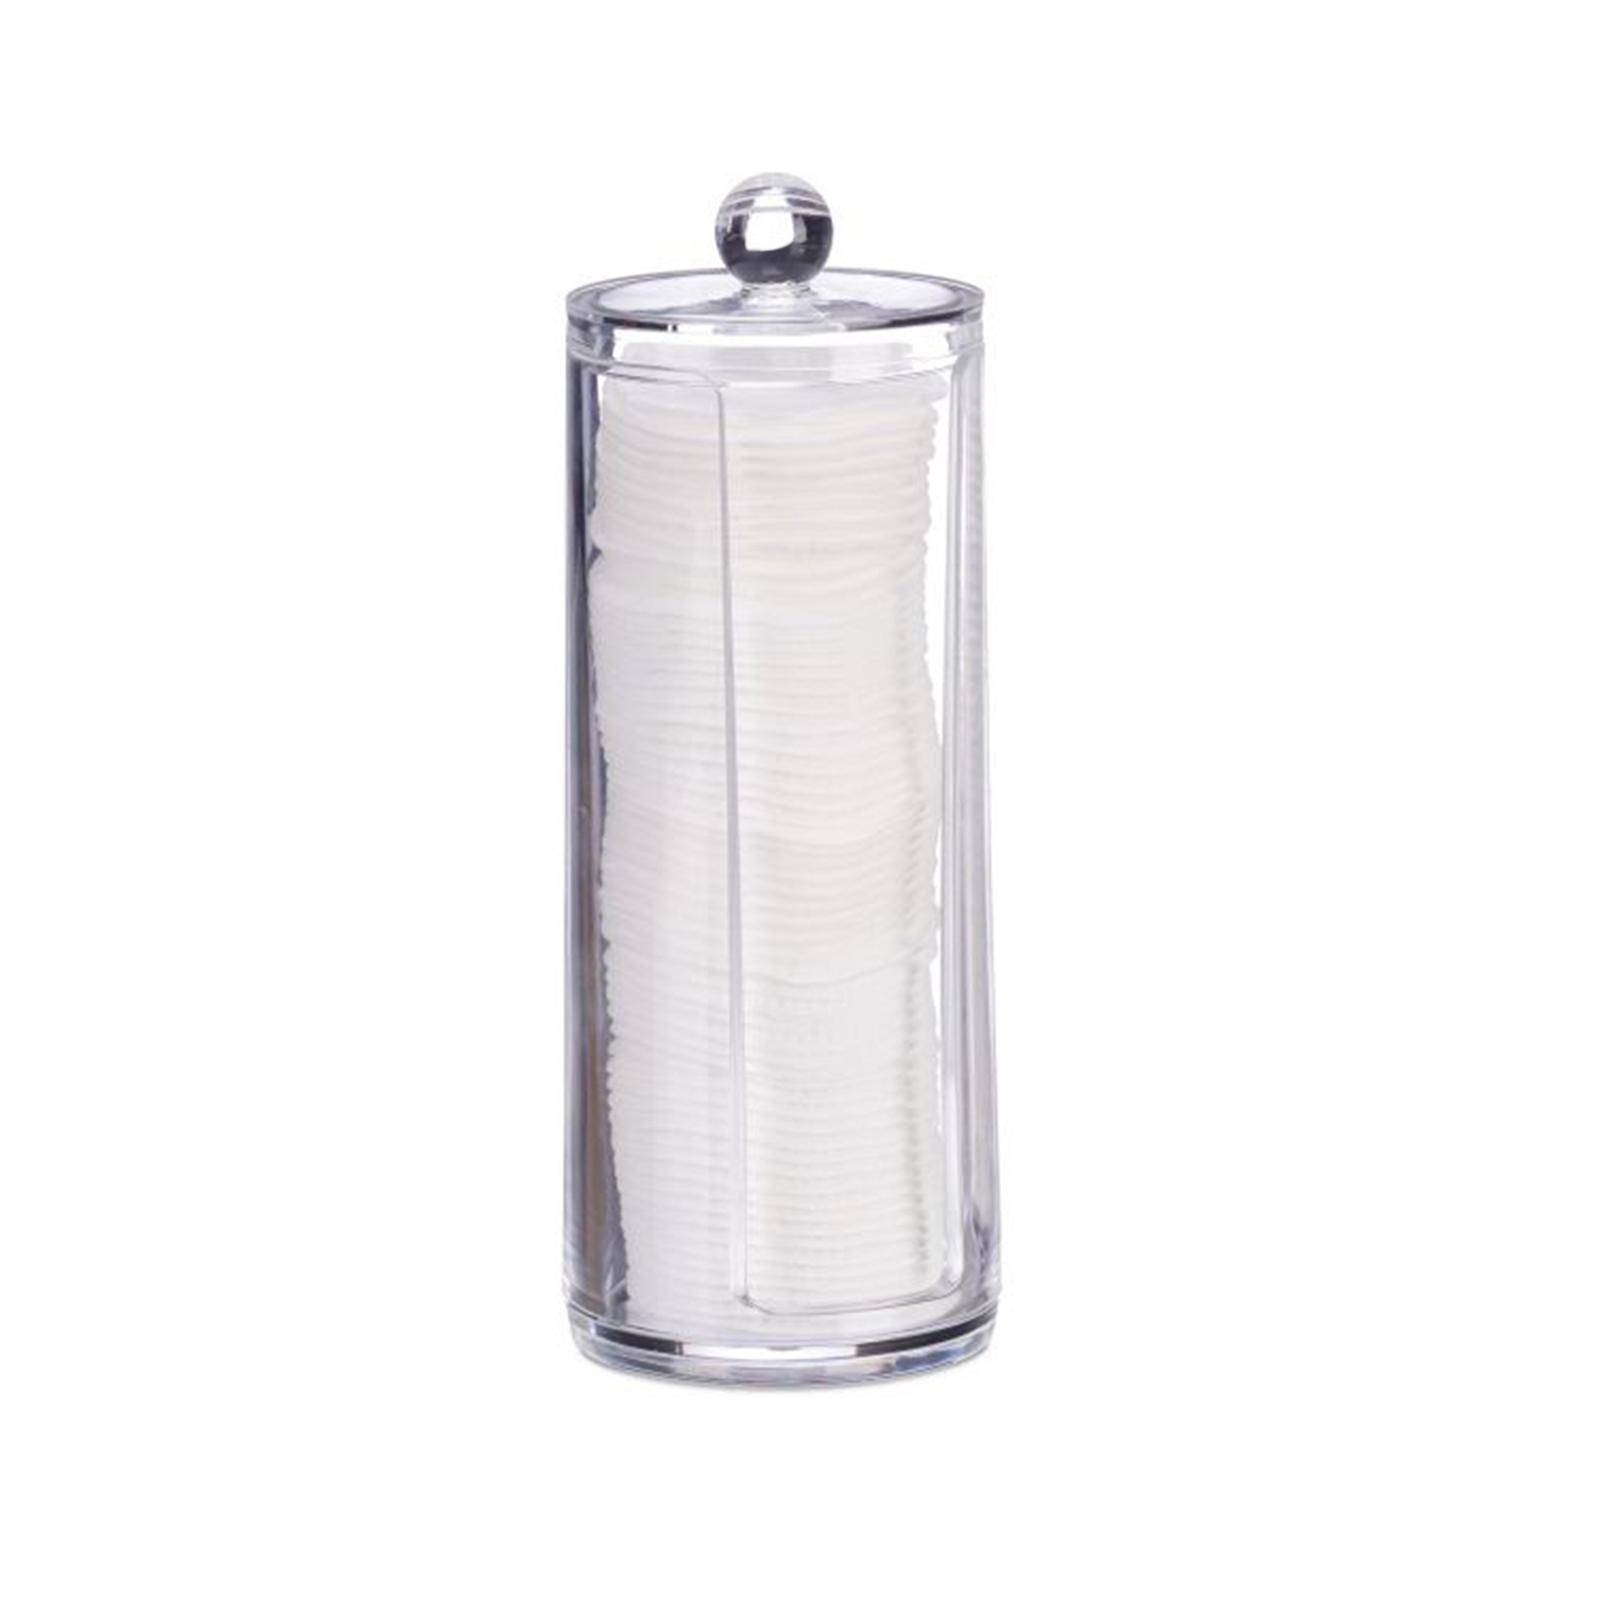 Porta dischetti struccanti contenitore in plastica trasparente con